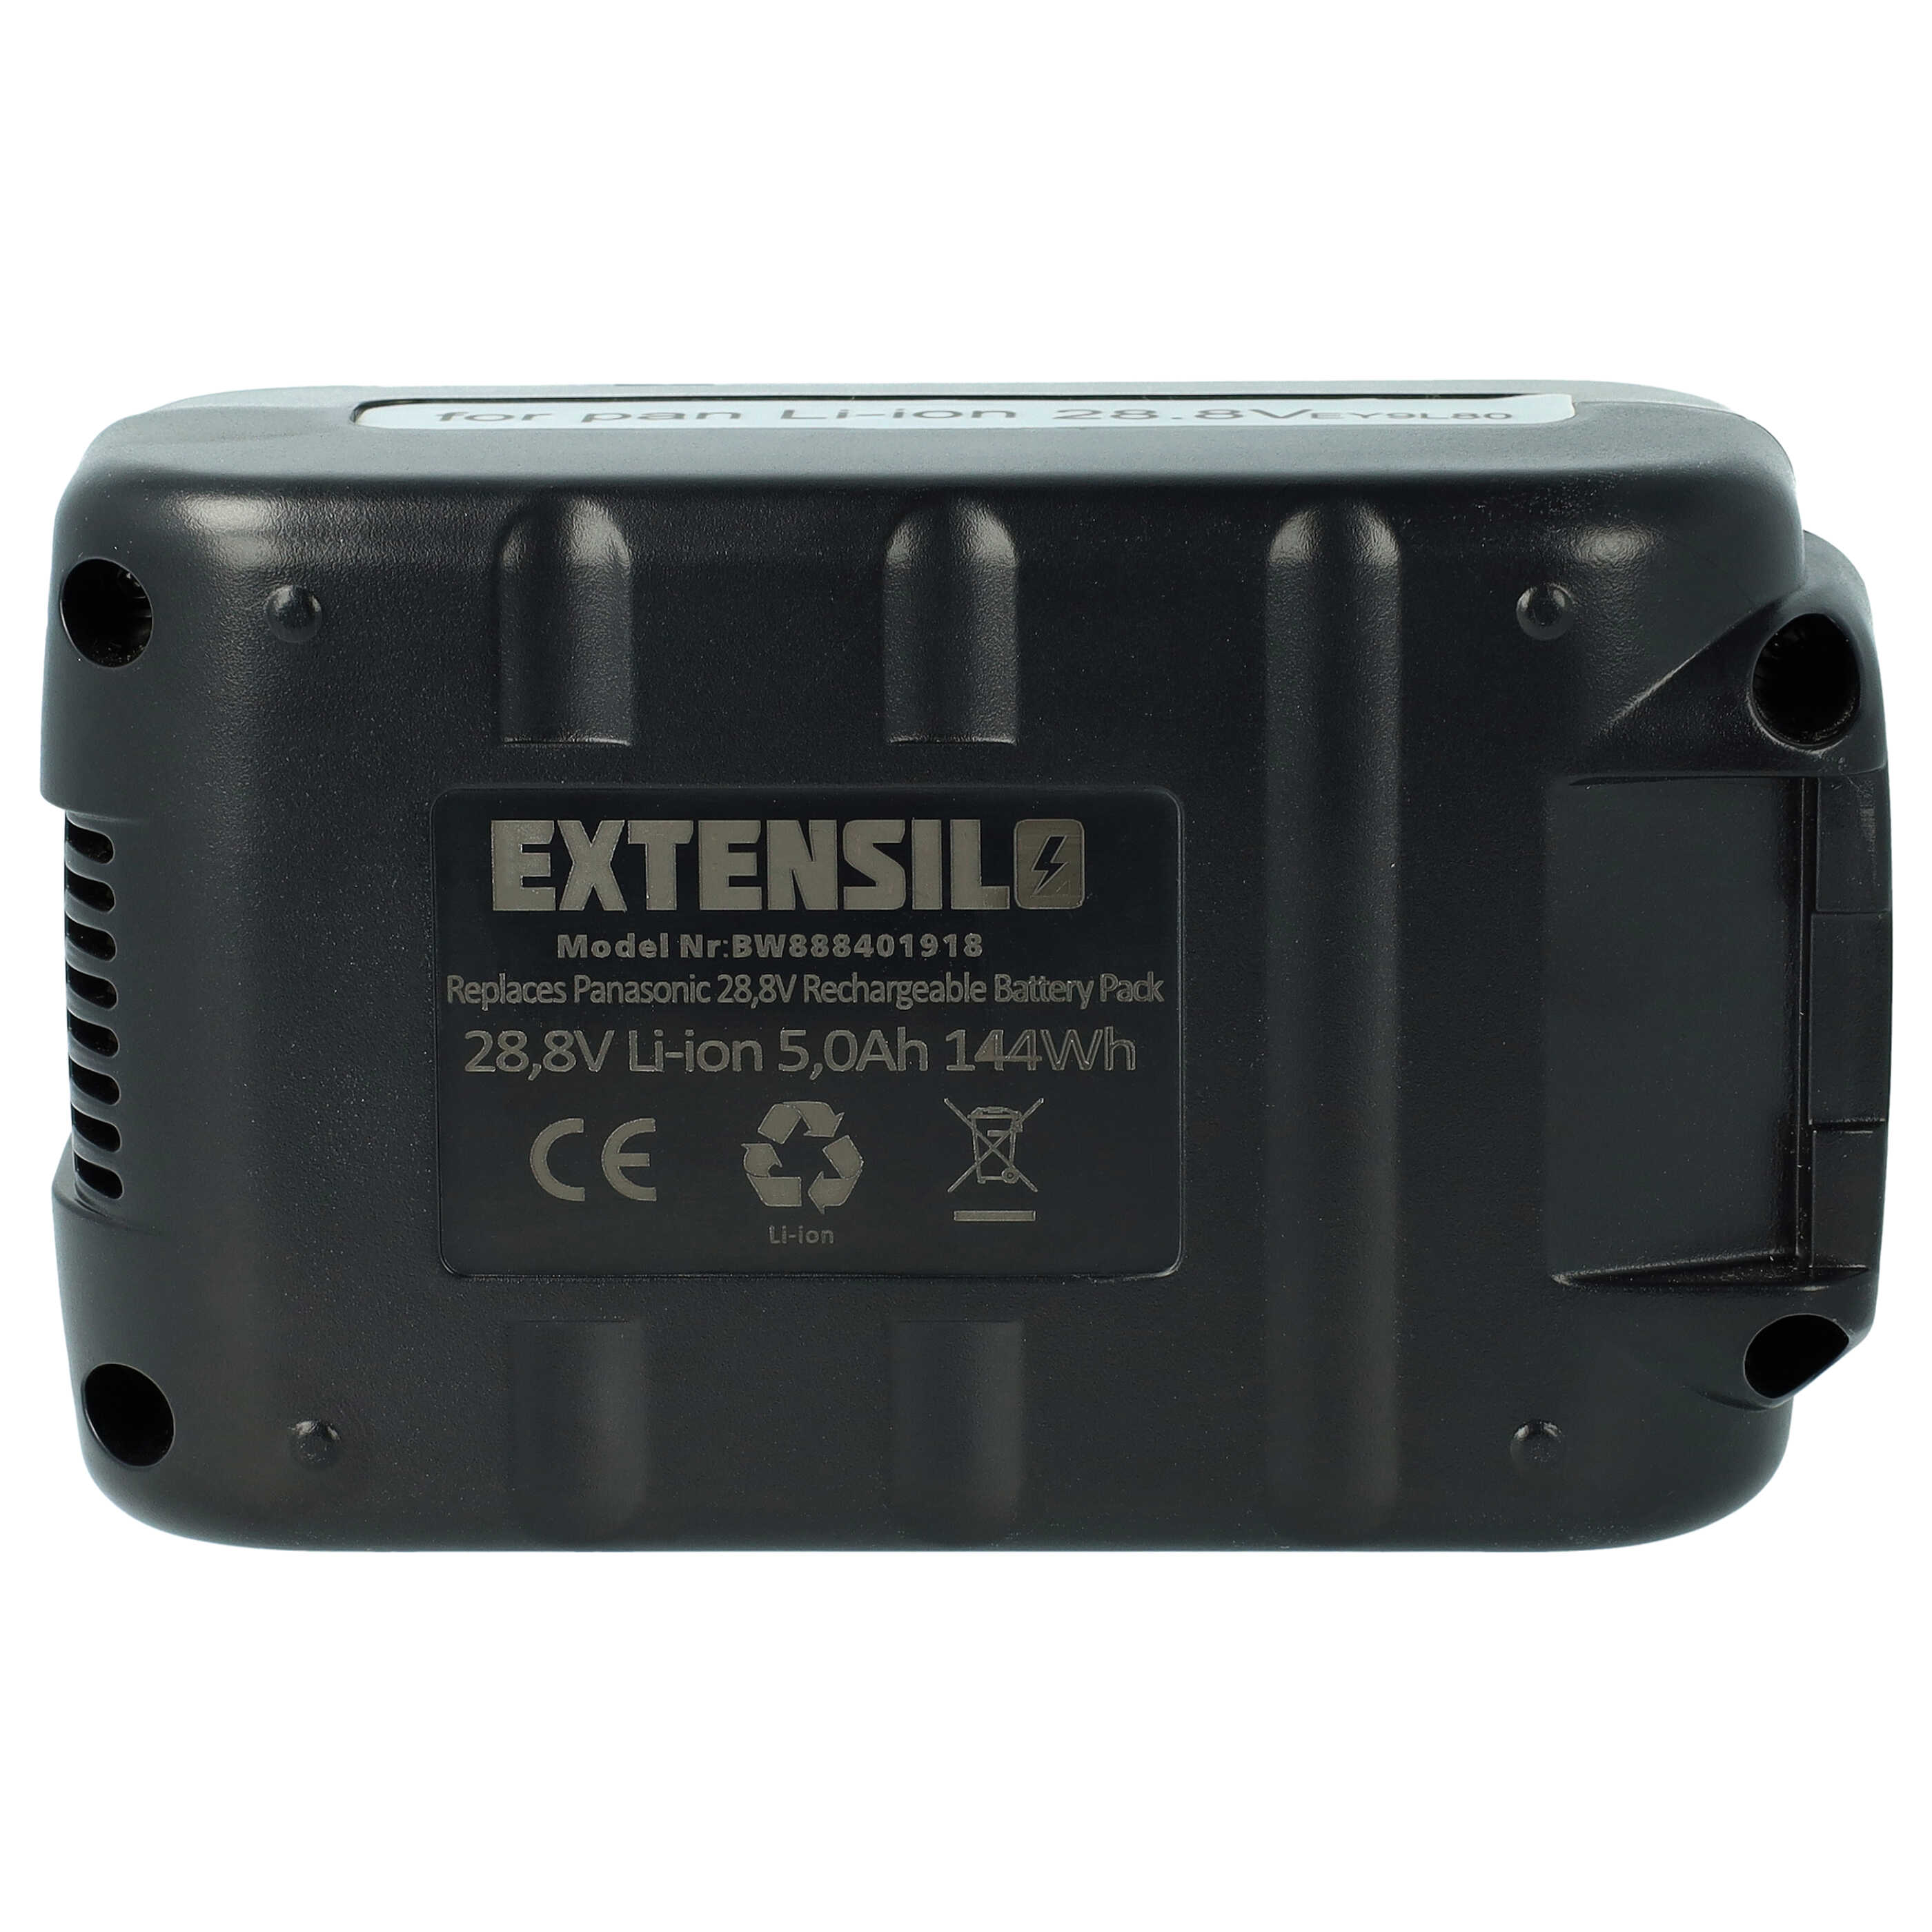 Batterie remplace Panasonic EZ9L80, EY9L80B, EY9L80 pour outil électrique - 5000 mAh, 28,8 V, Li-ion